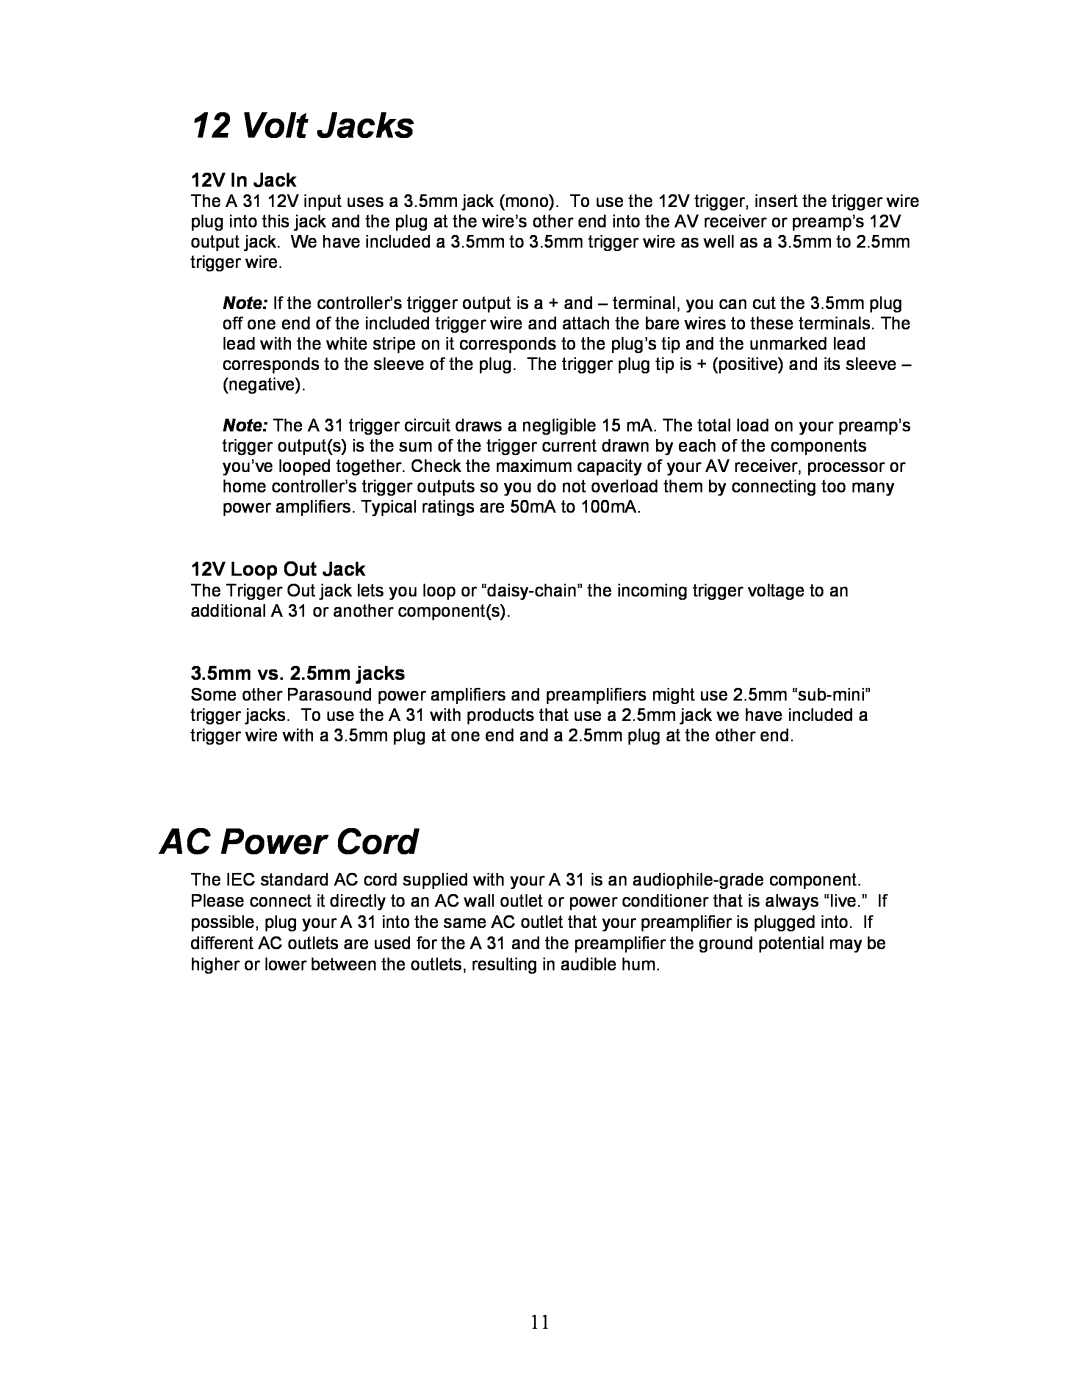 Parasound A 31 manual Volt Jacks, AC Power Cord, 12V In Jack, 12V Loop Out Jack, 3.5mm vs. 2.5mm jacks 